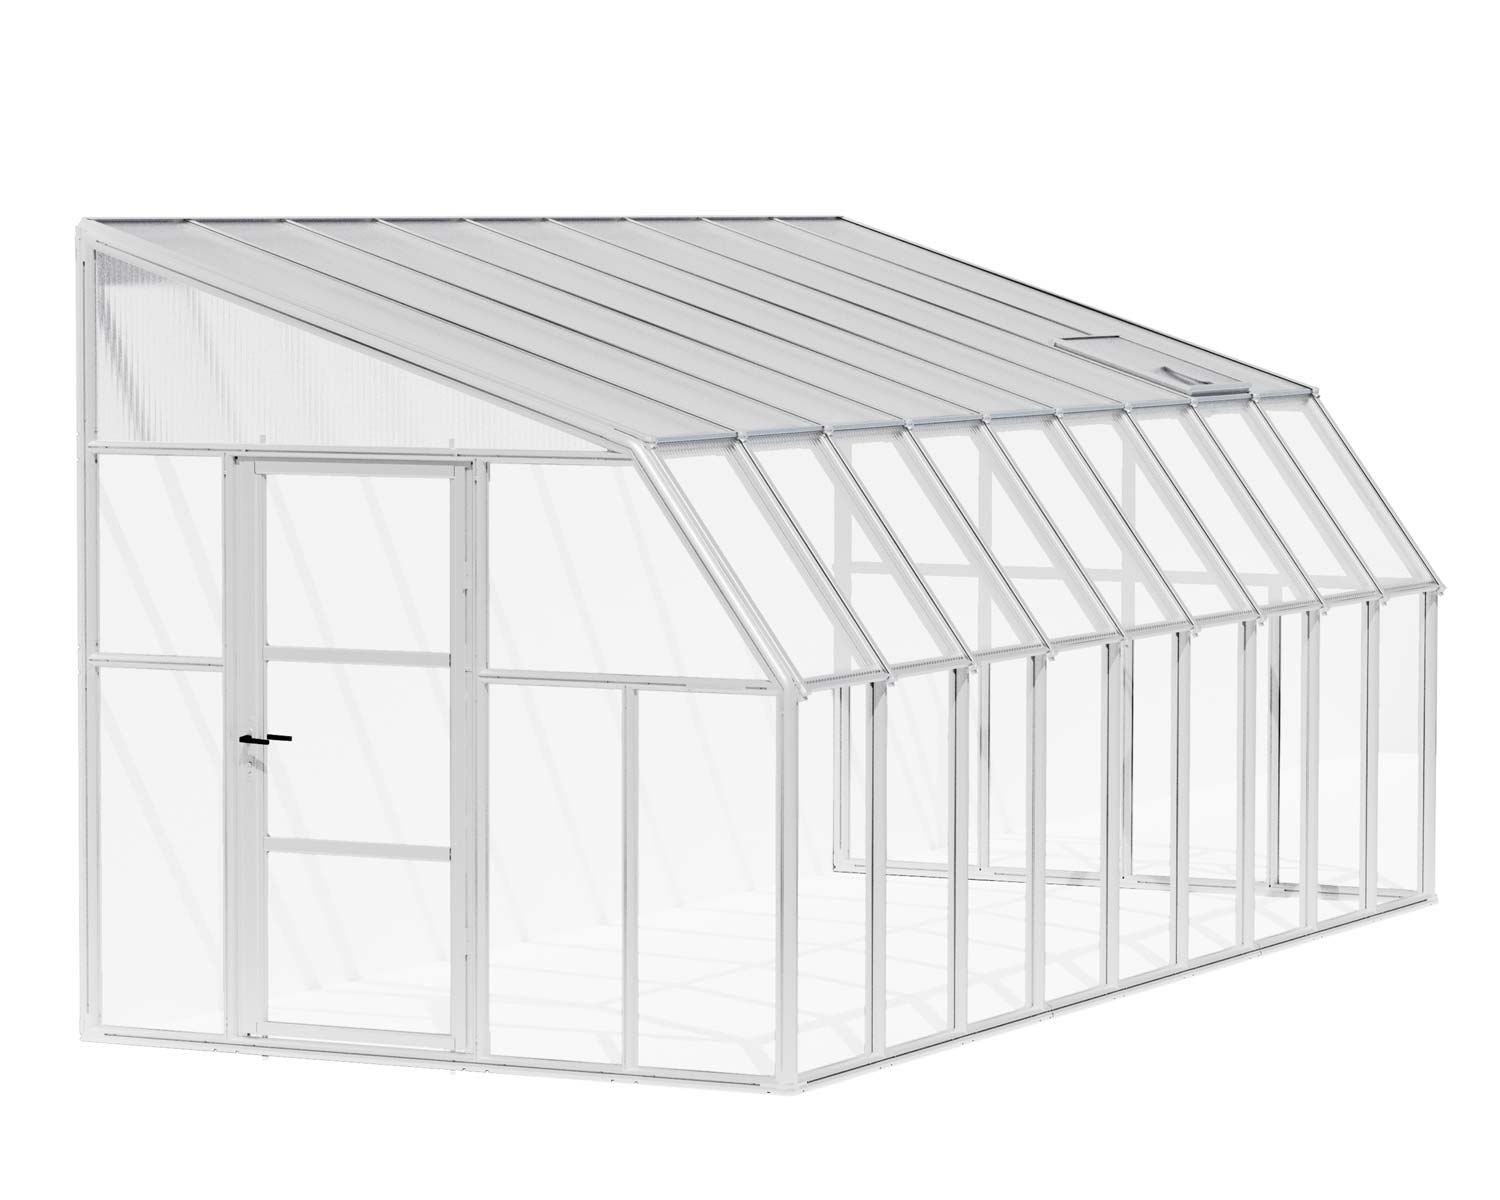 Solarium SunRoom Kit 8 ft. x 18 ft. White Structure & Hybrid Glazing